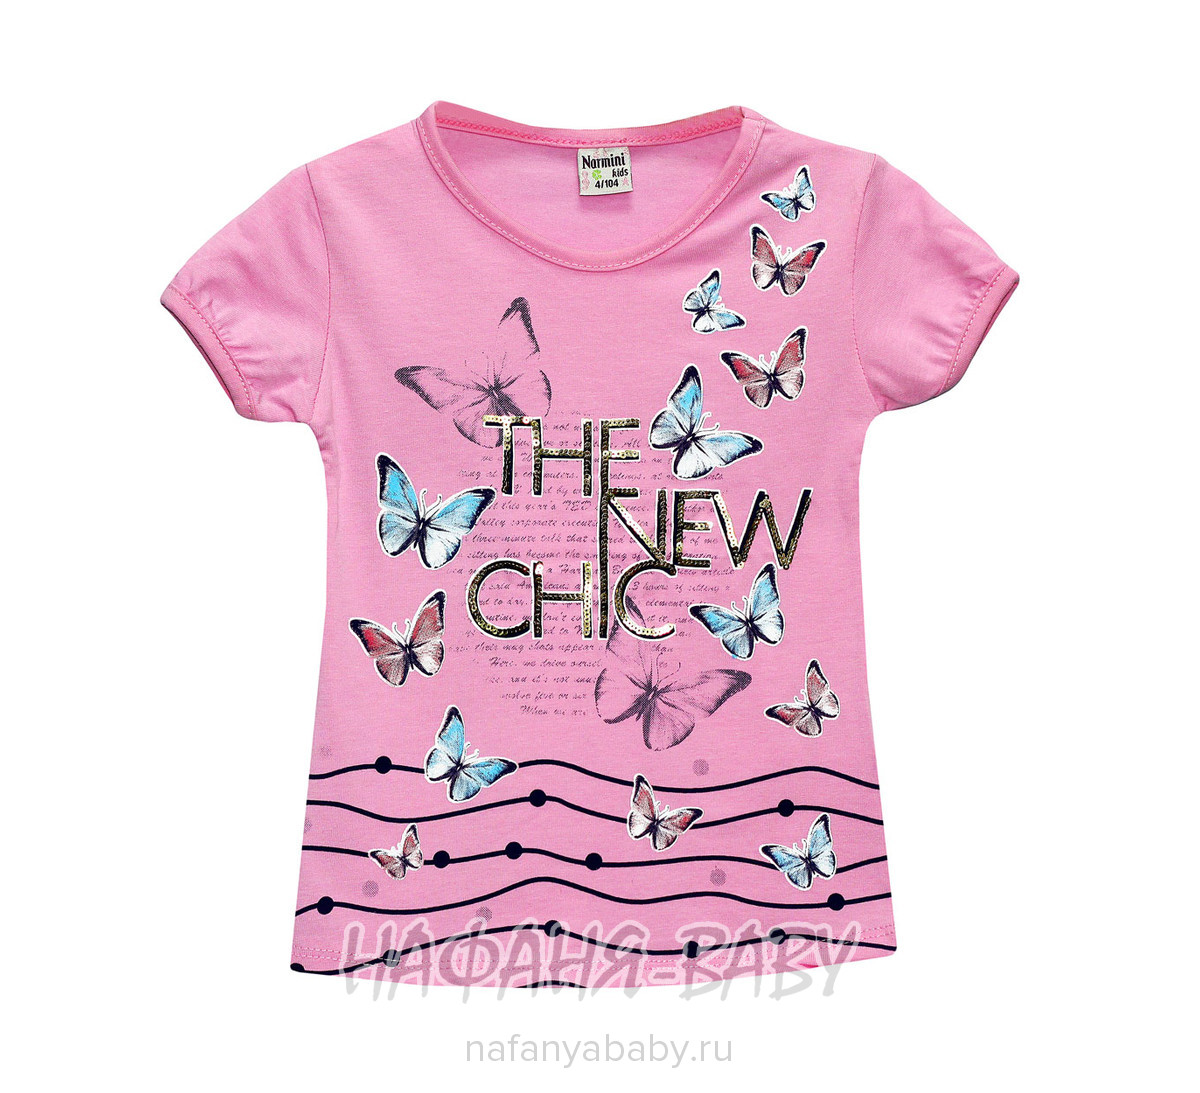 Детская футболка NARMINI, купить в интернет магазине Нафаня. арт: 5564.